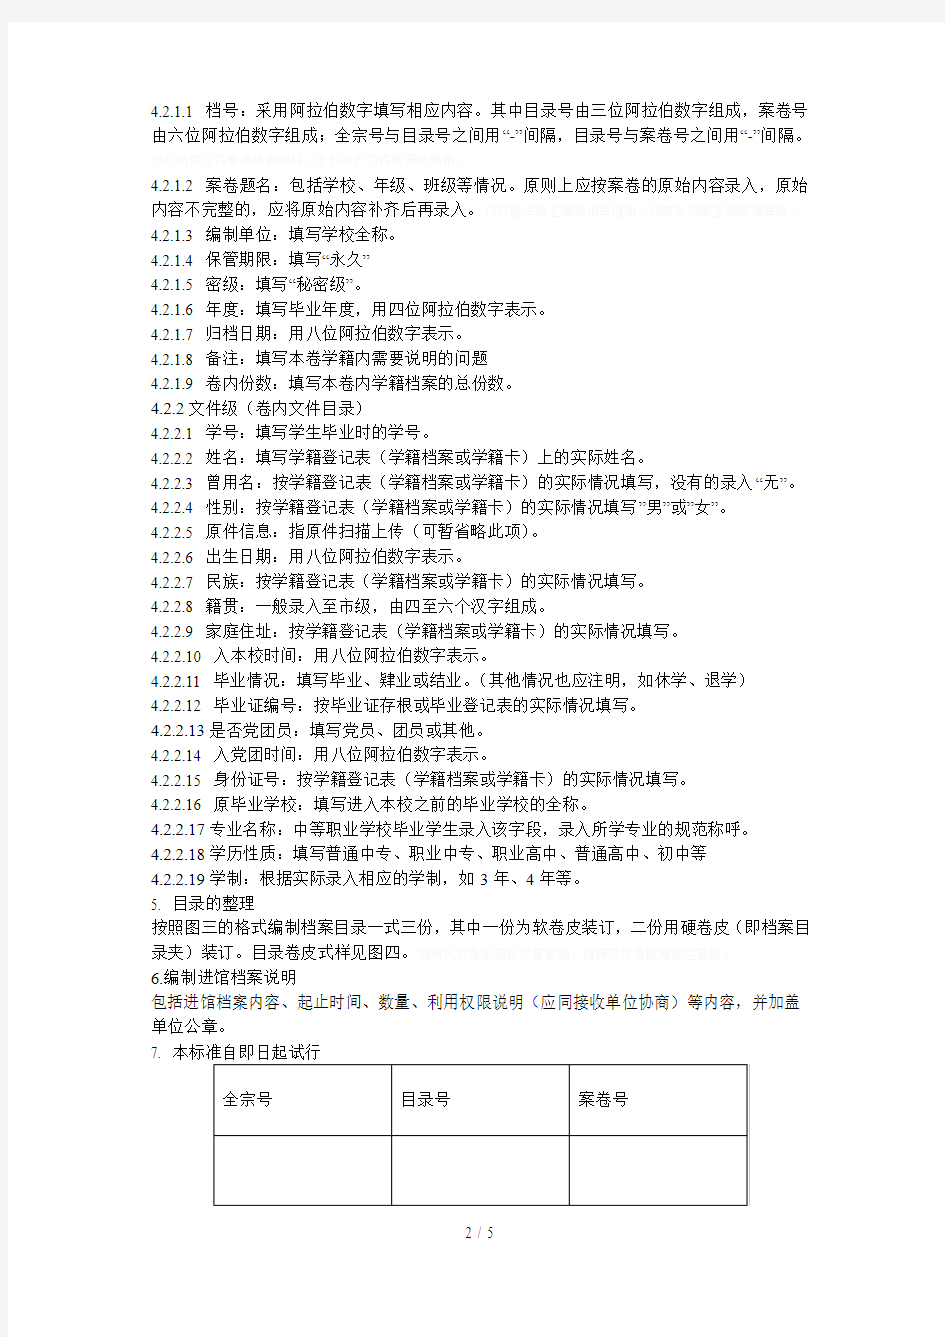 青岛市学籍档案移交档案馆整理标准(试行)